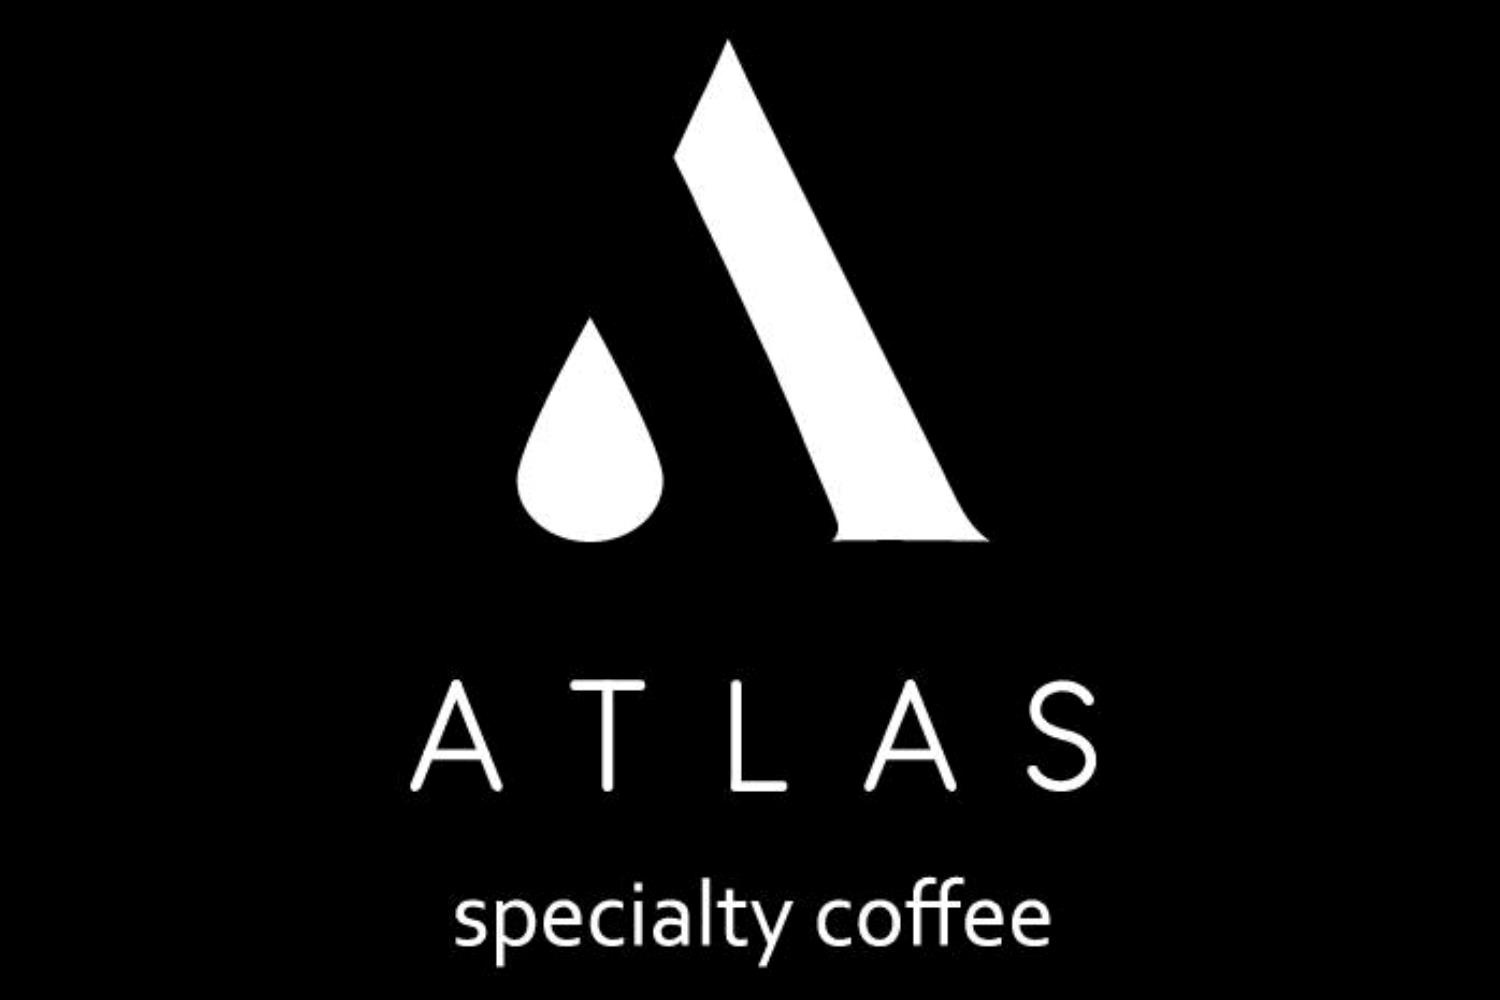 Atlas Specialty Coffee